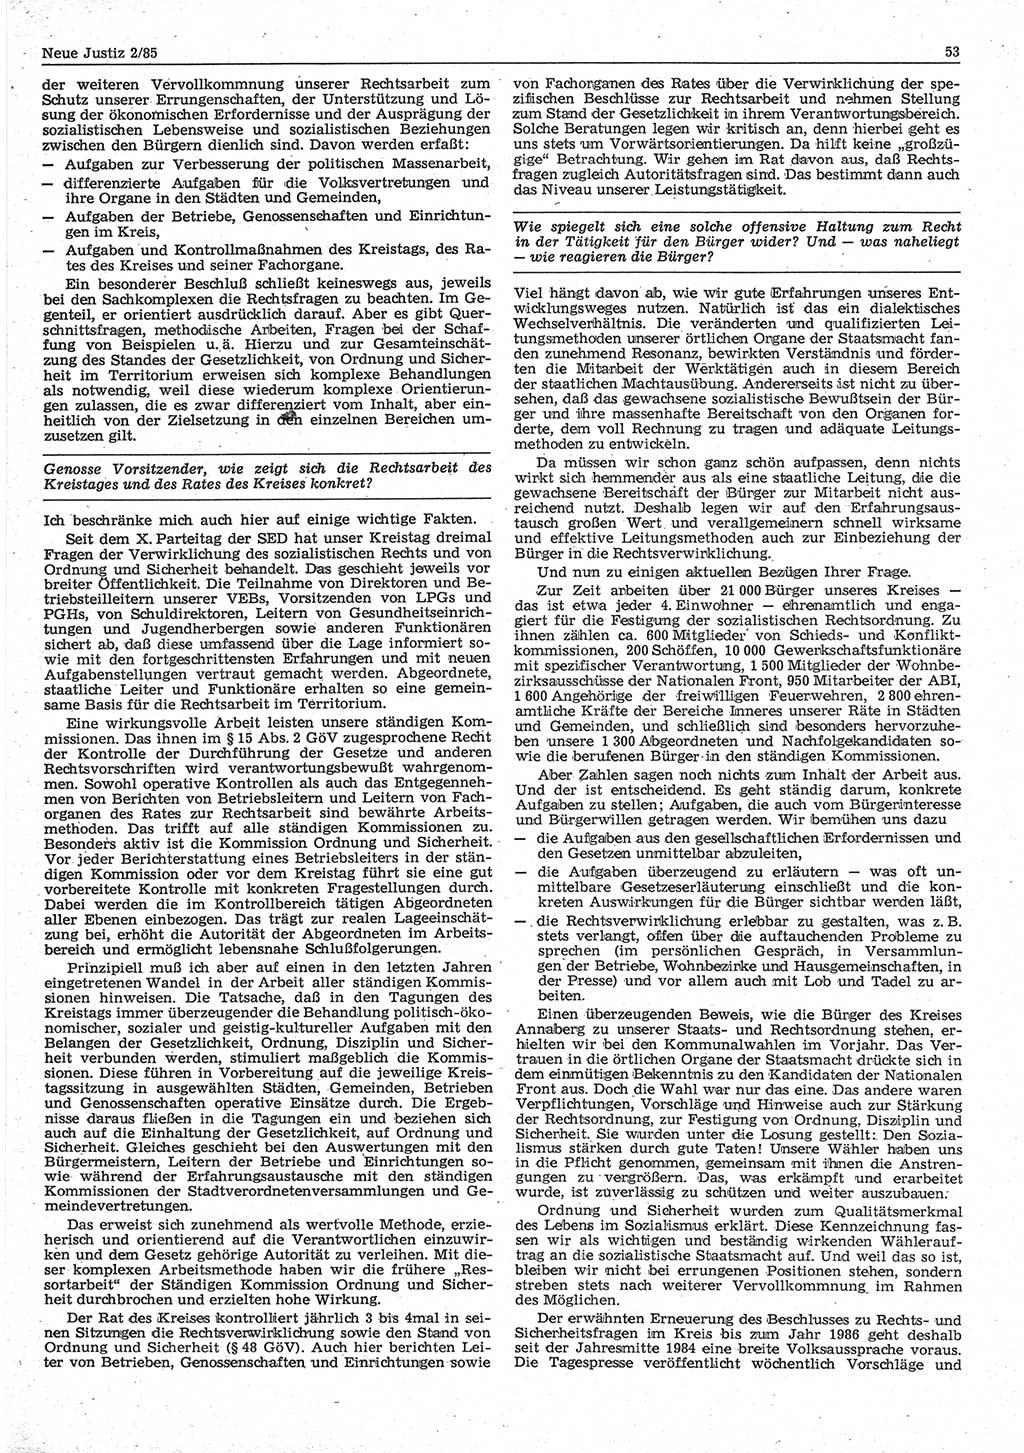 Neue Justiz (NJ), Zeitschrift für sozialistisches Recht und Gesetzlichkeit [Deutsche Demokratische Republik (DDR)], 39. Jahrgang 1985, Seite 53 (NJ DDR 1985, S. 53)